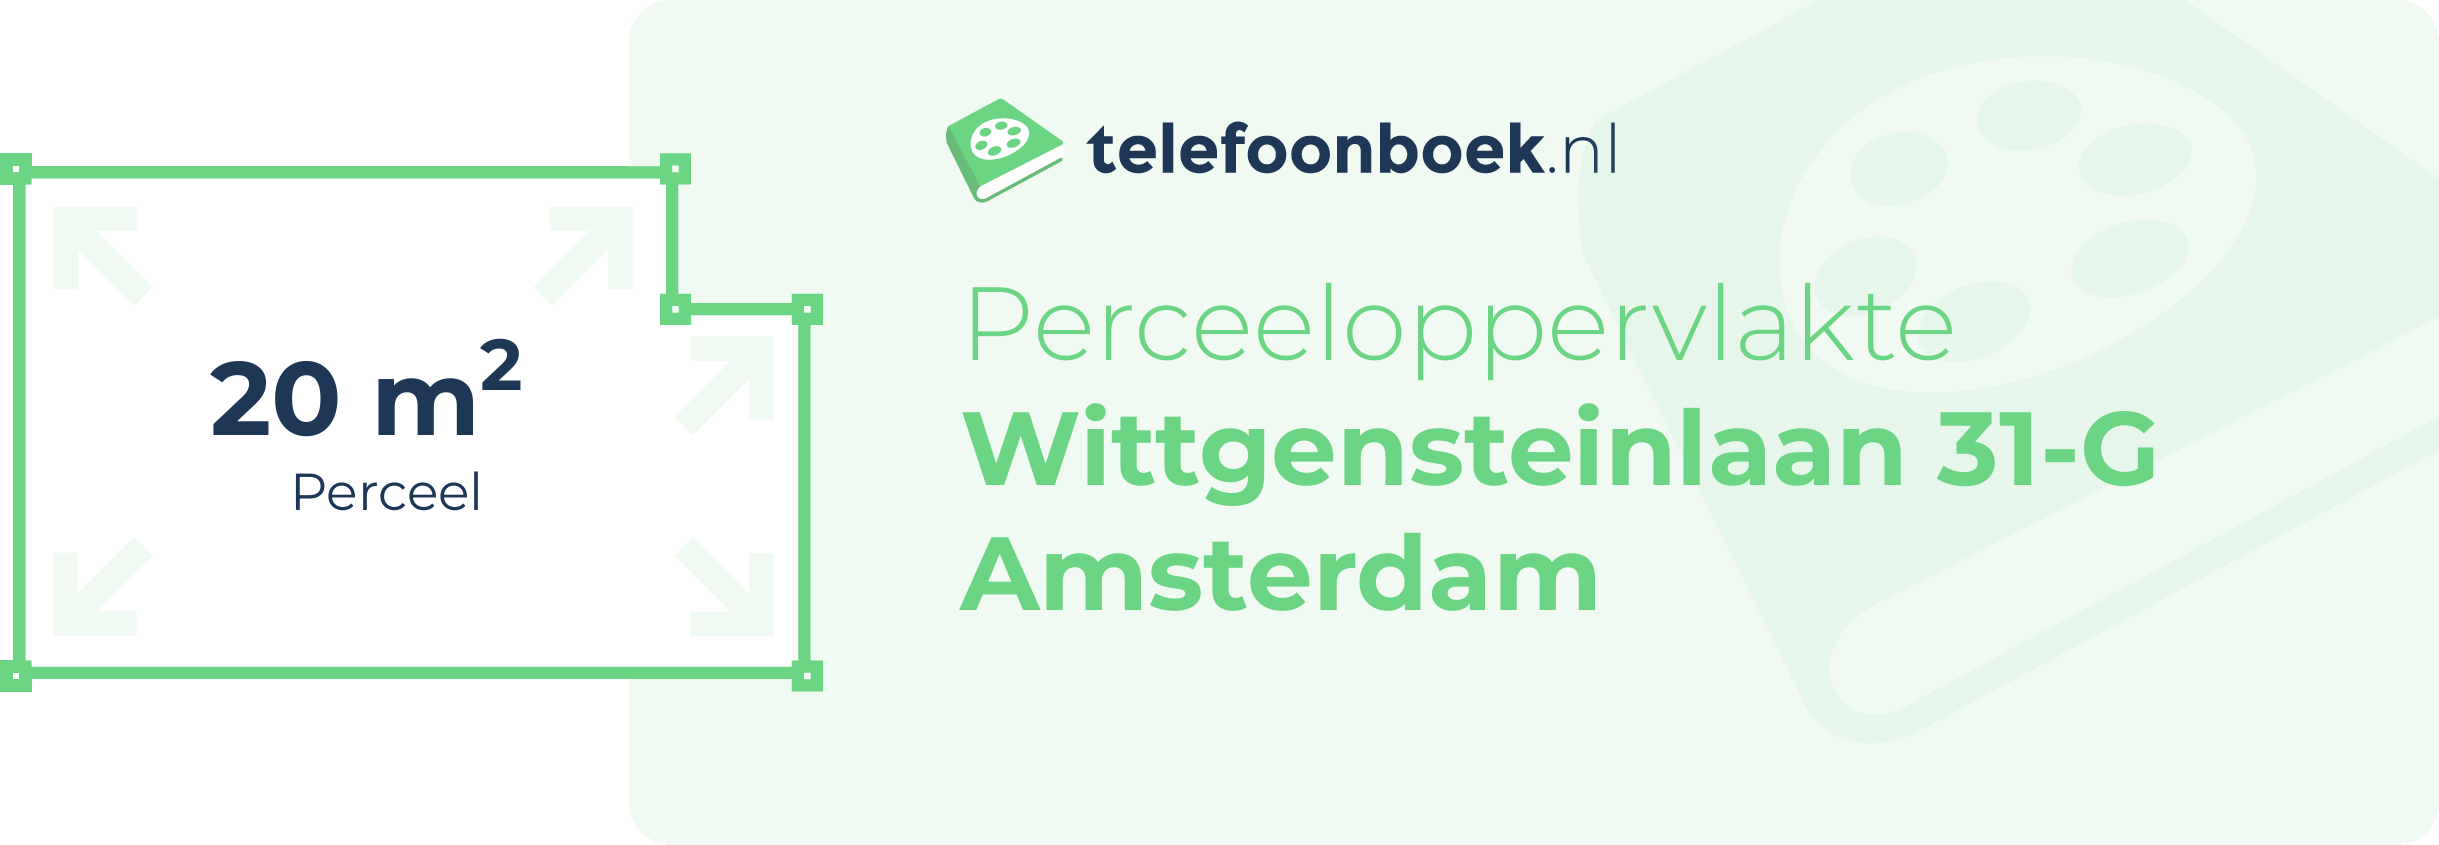 Perceeloppervlakte Wittgensteinlaan 31-G Amsterdam